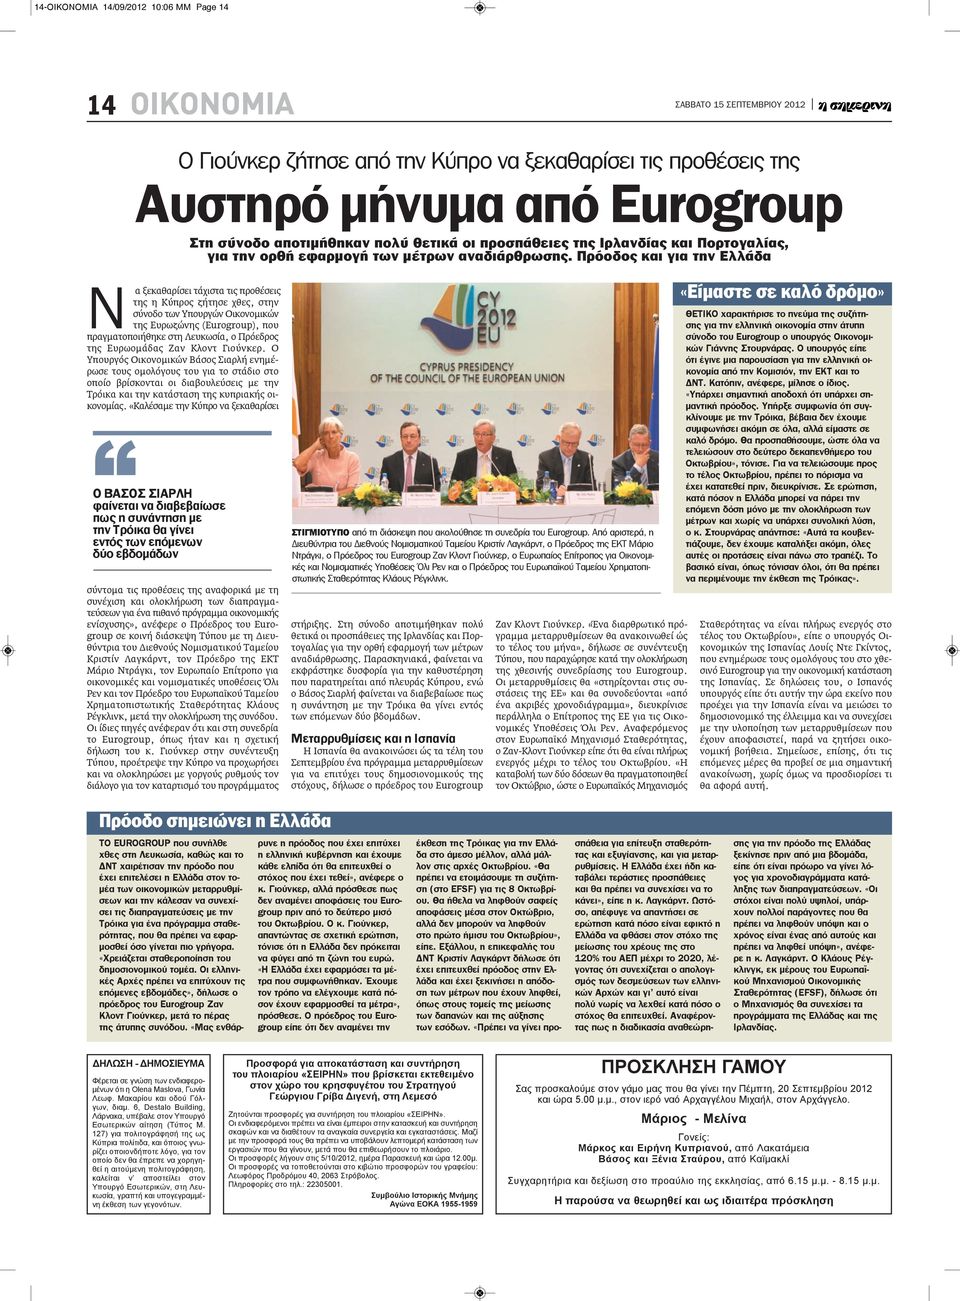 πρόοδος και για την Ελλάδα N α ξεκαθαρίσει τάχιστα τις προθέσεις της η Κύπρος ζήτησε χθες, στην σύνοδο των Υπουργών Οικονομικών της Ευρωζώνης (Eurogroup), που πραγματοποιήθηκε στη Λευκωσία, ο